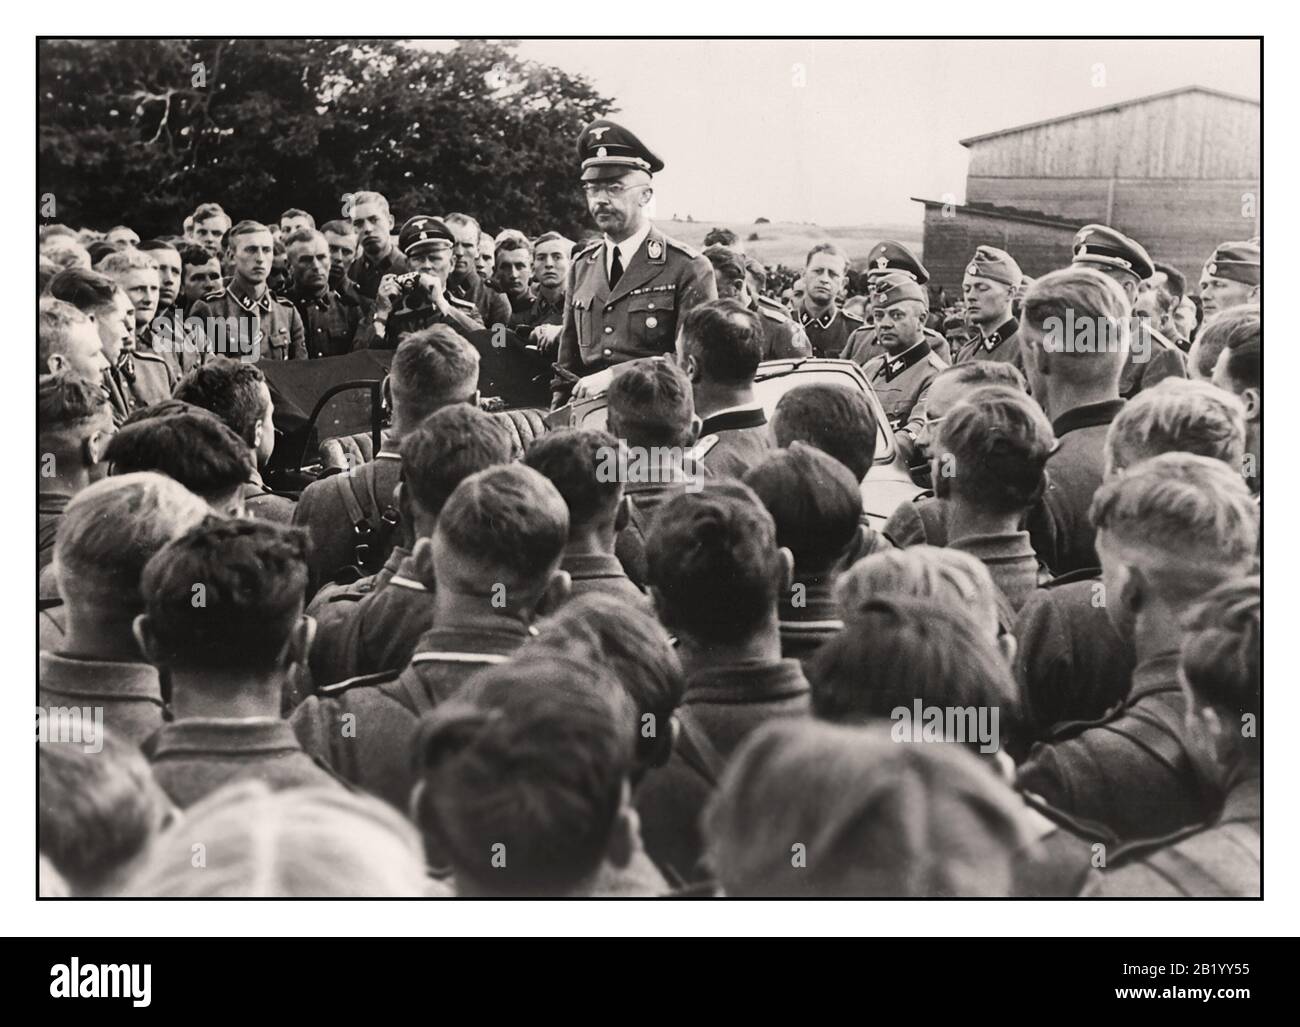 Vintage Nazi News Propaganda image de Reichsfuehrer-SS Heinrich Himmler s'adressant à un groupe de soldats dans un régiment de cavalerie du Waffen SS dans les territoires de l'est de la Pologne. Seconde Guerre mondiale seconde Guerre mondiale années 1940 Banque D'Images